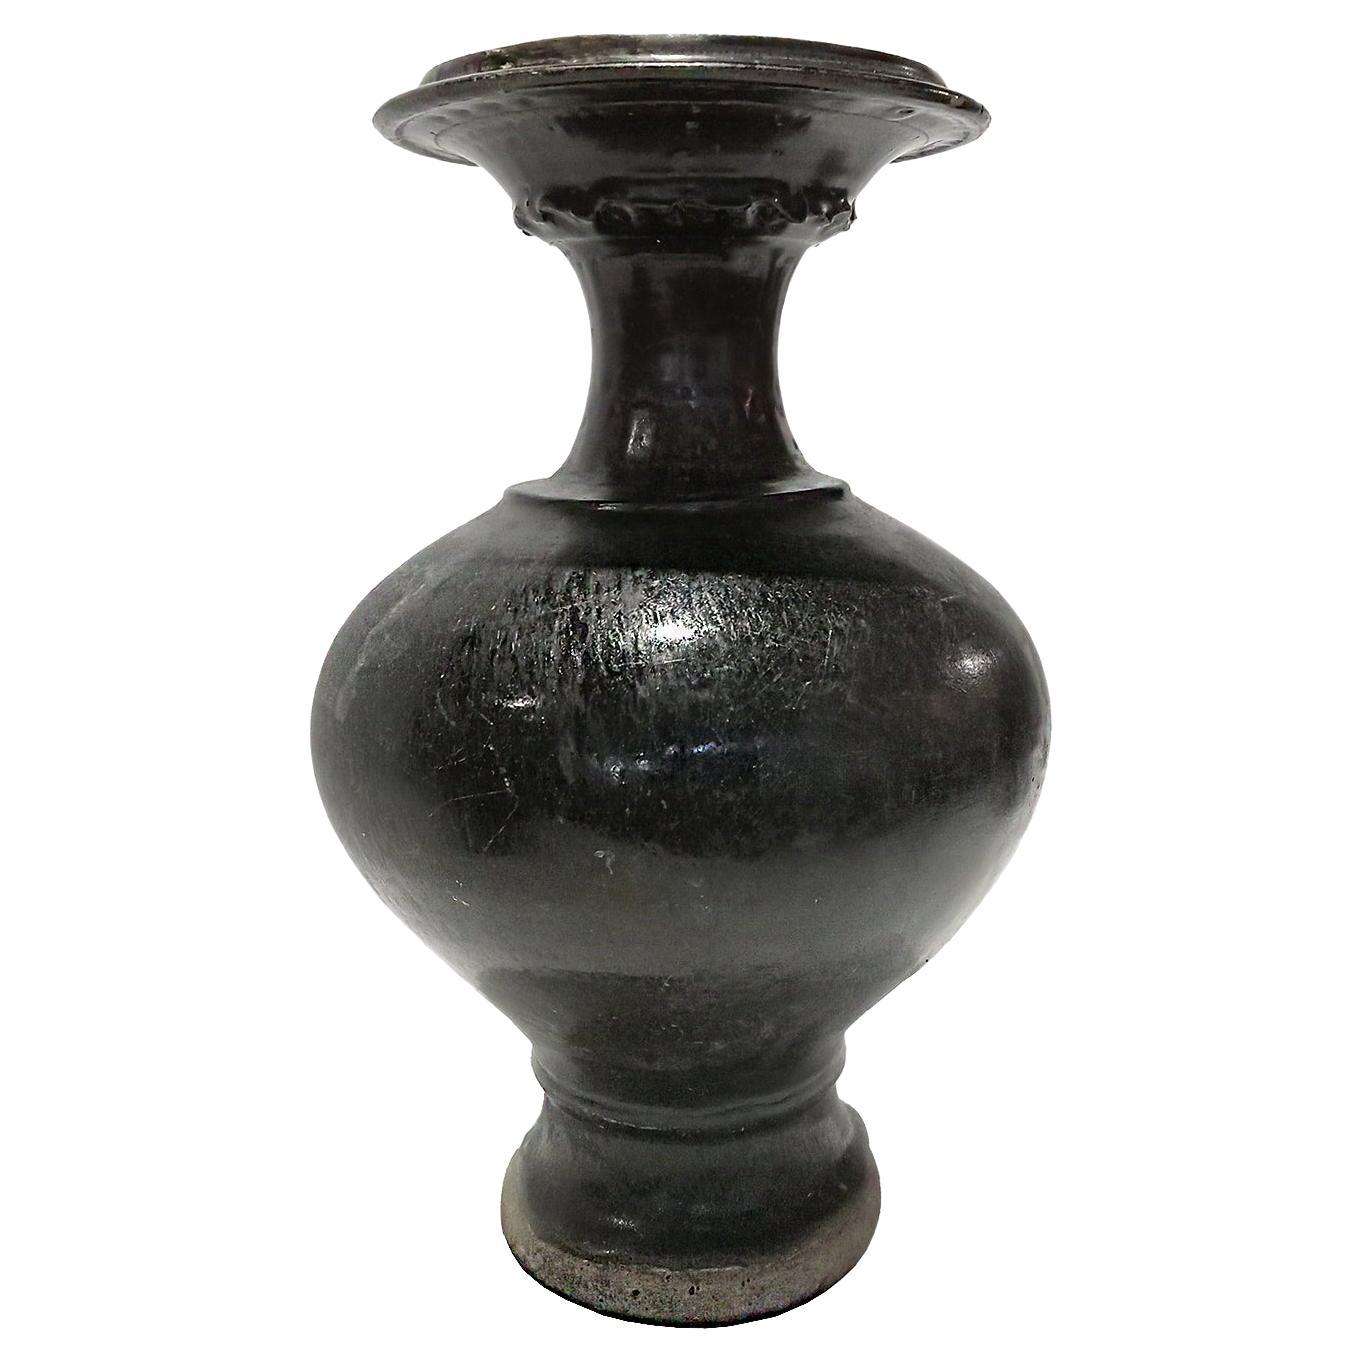 Ceramic Vase from Thailand, in Black Glaze